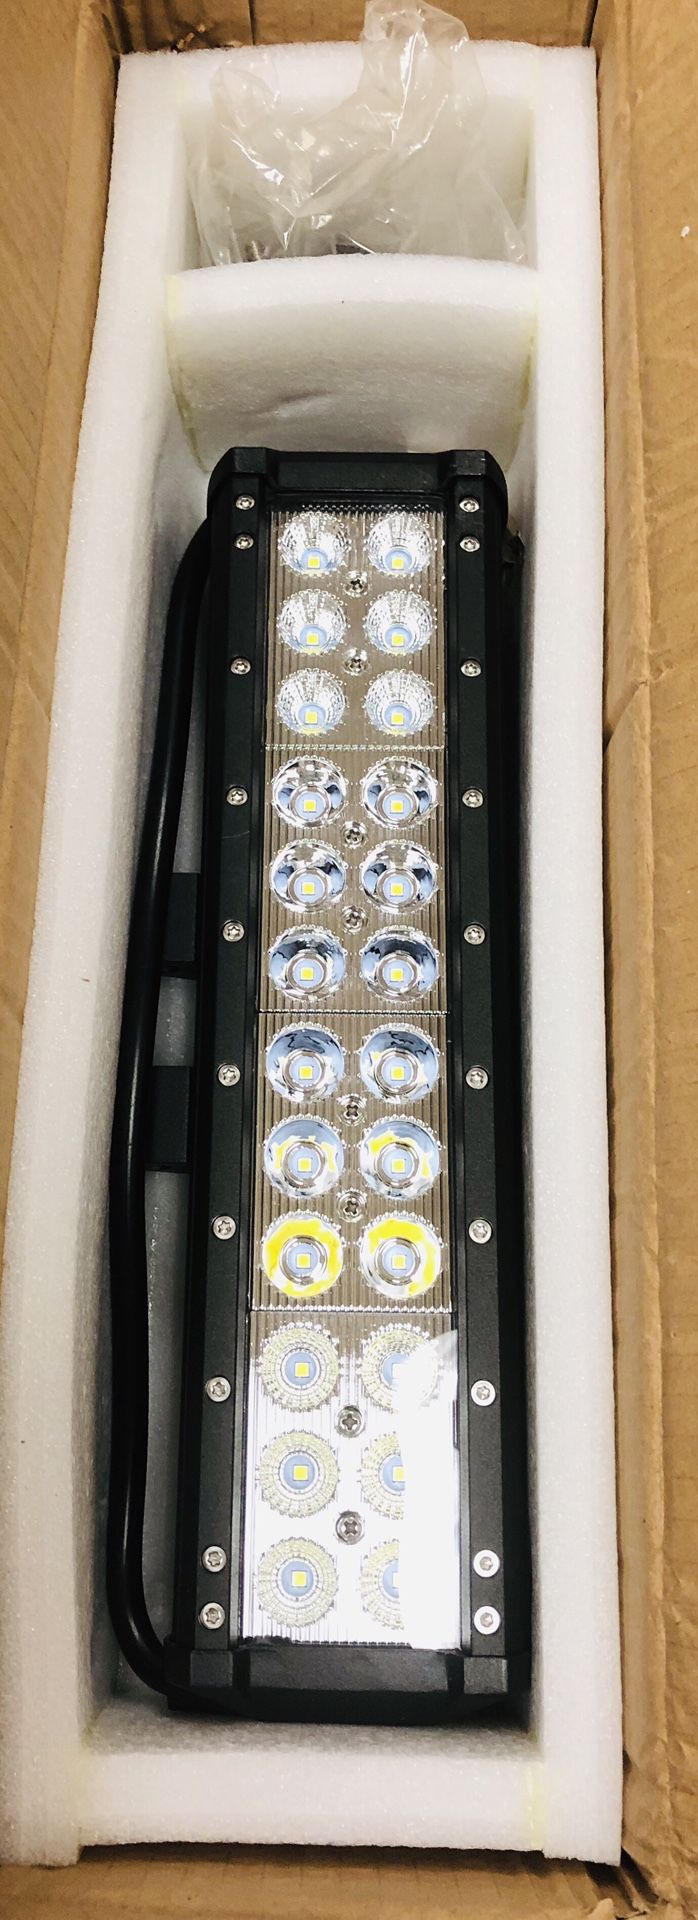 12” LED Bar Light - 72W Spot Light - Truck/ATV/Motorhome/Etc - New In the box